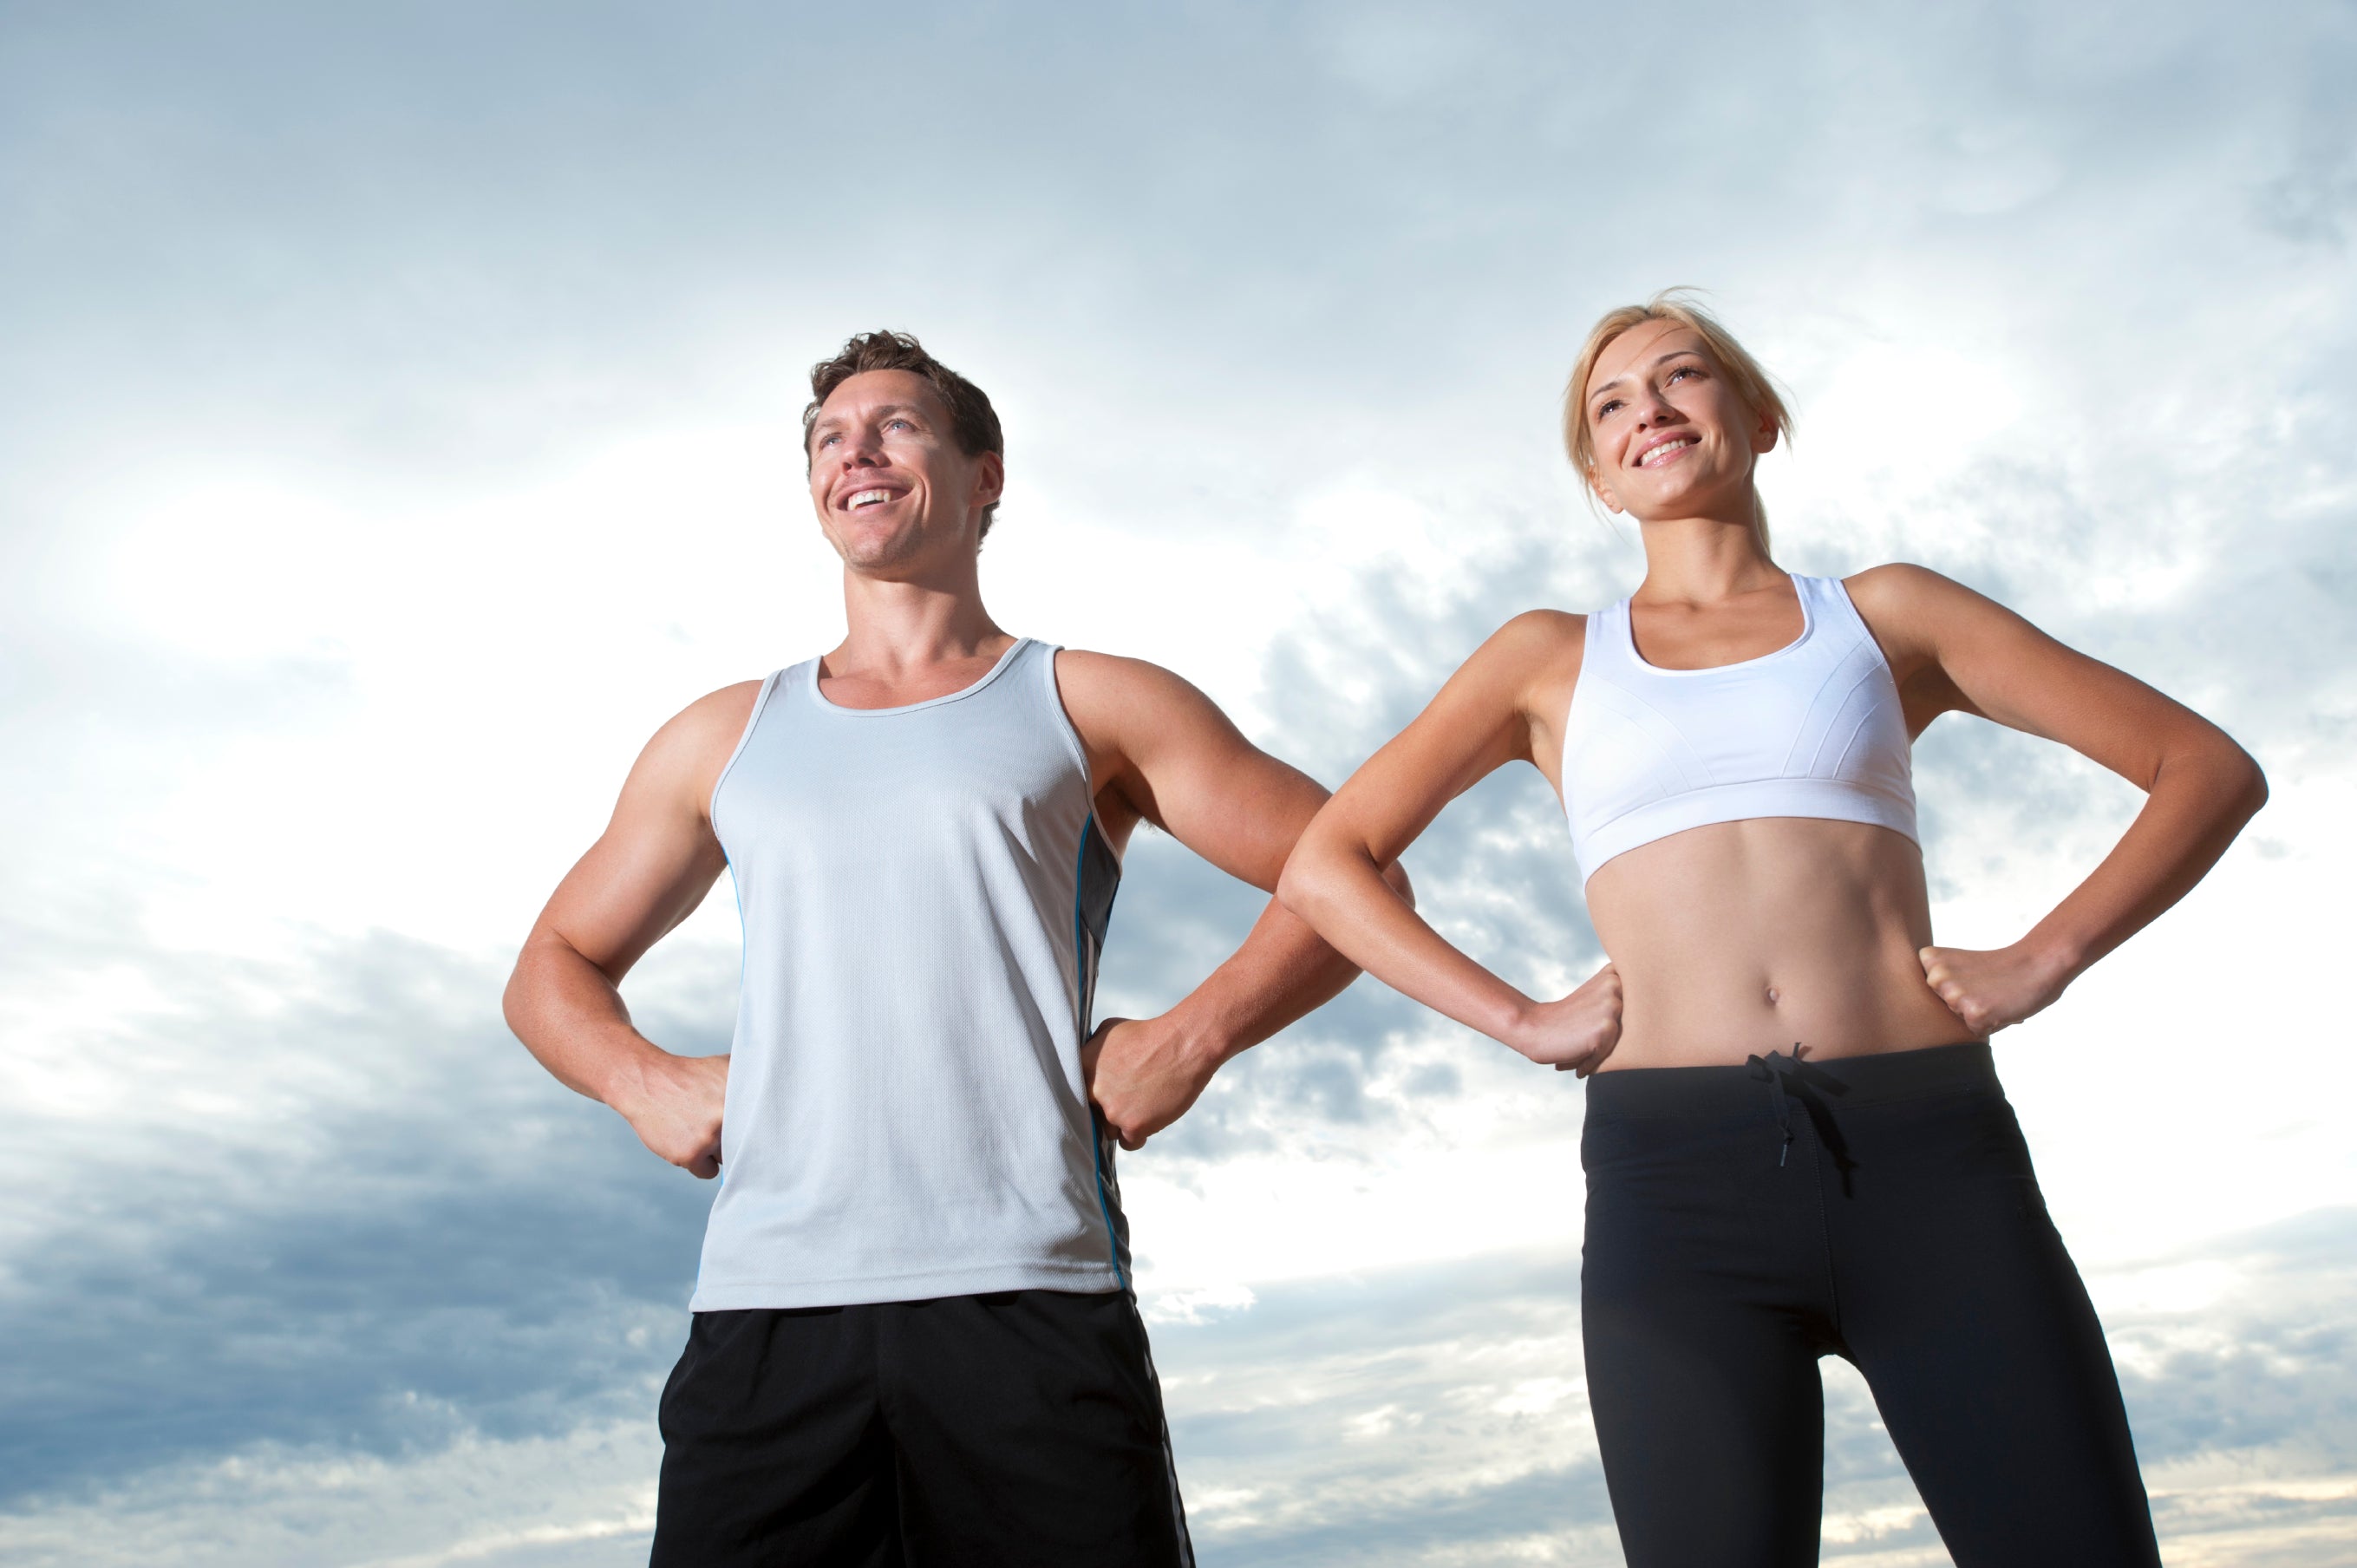 Beneficios: Mejora la circulación, tonifica los músculos y